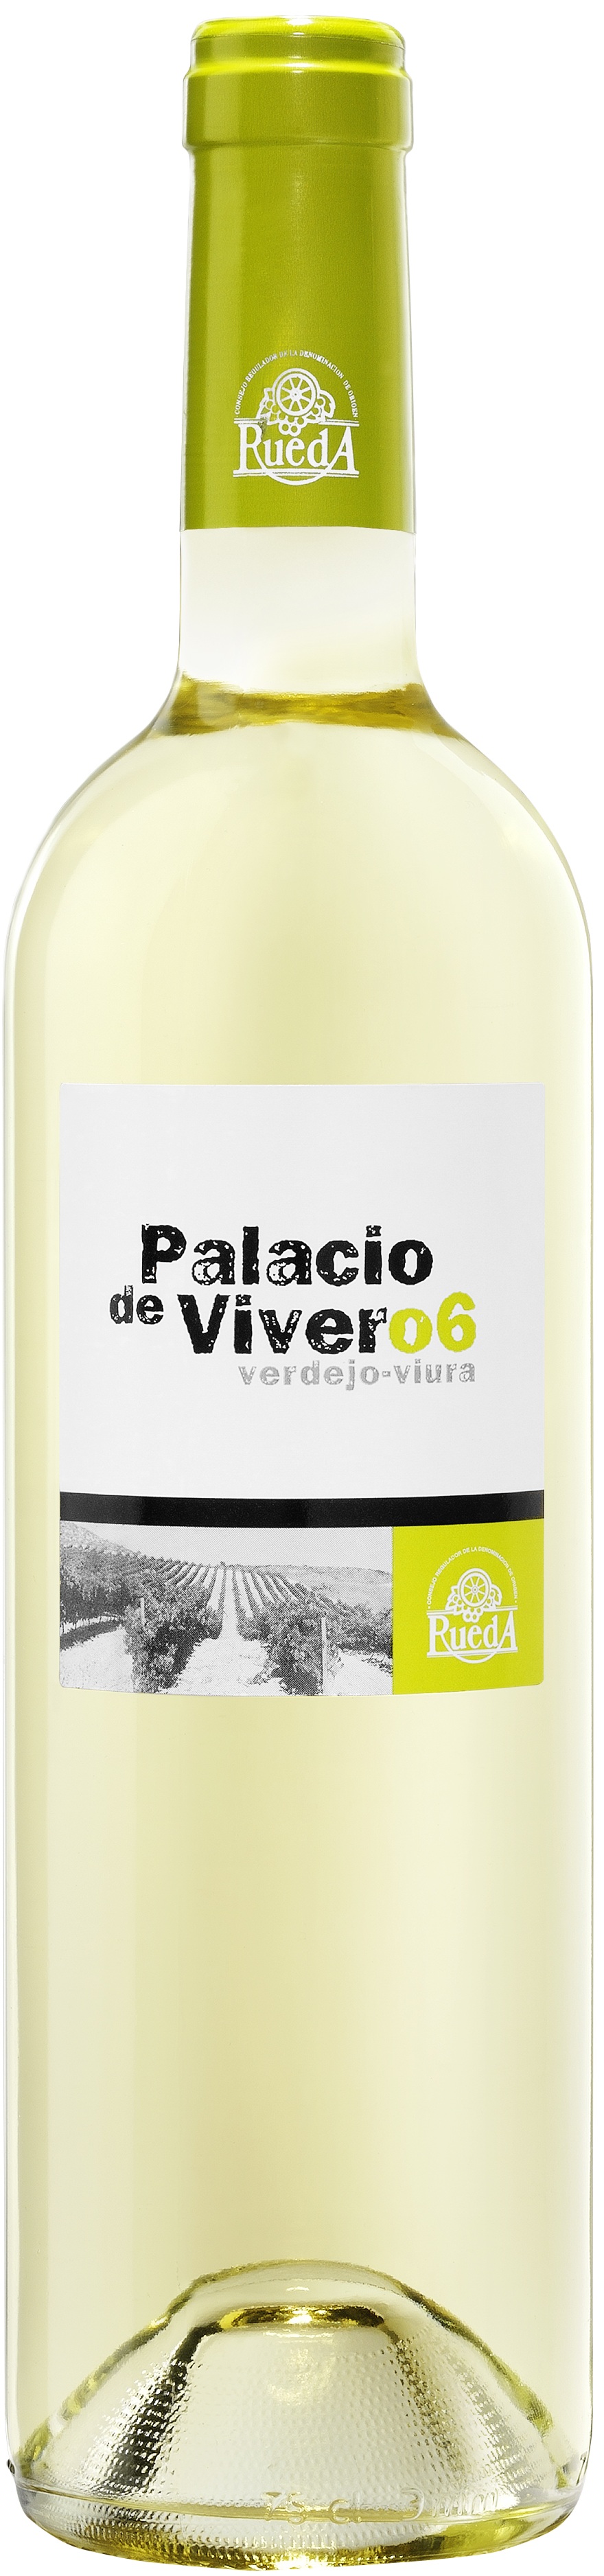 Bild von der Weinflasche Palacio de Vivero Rueda